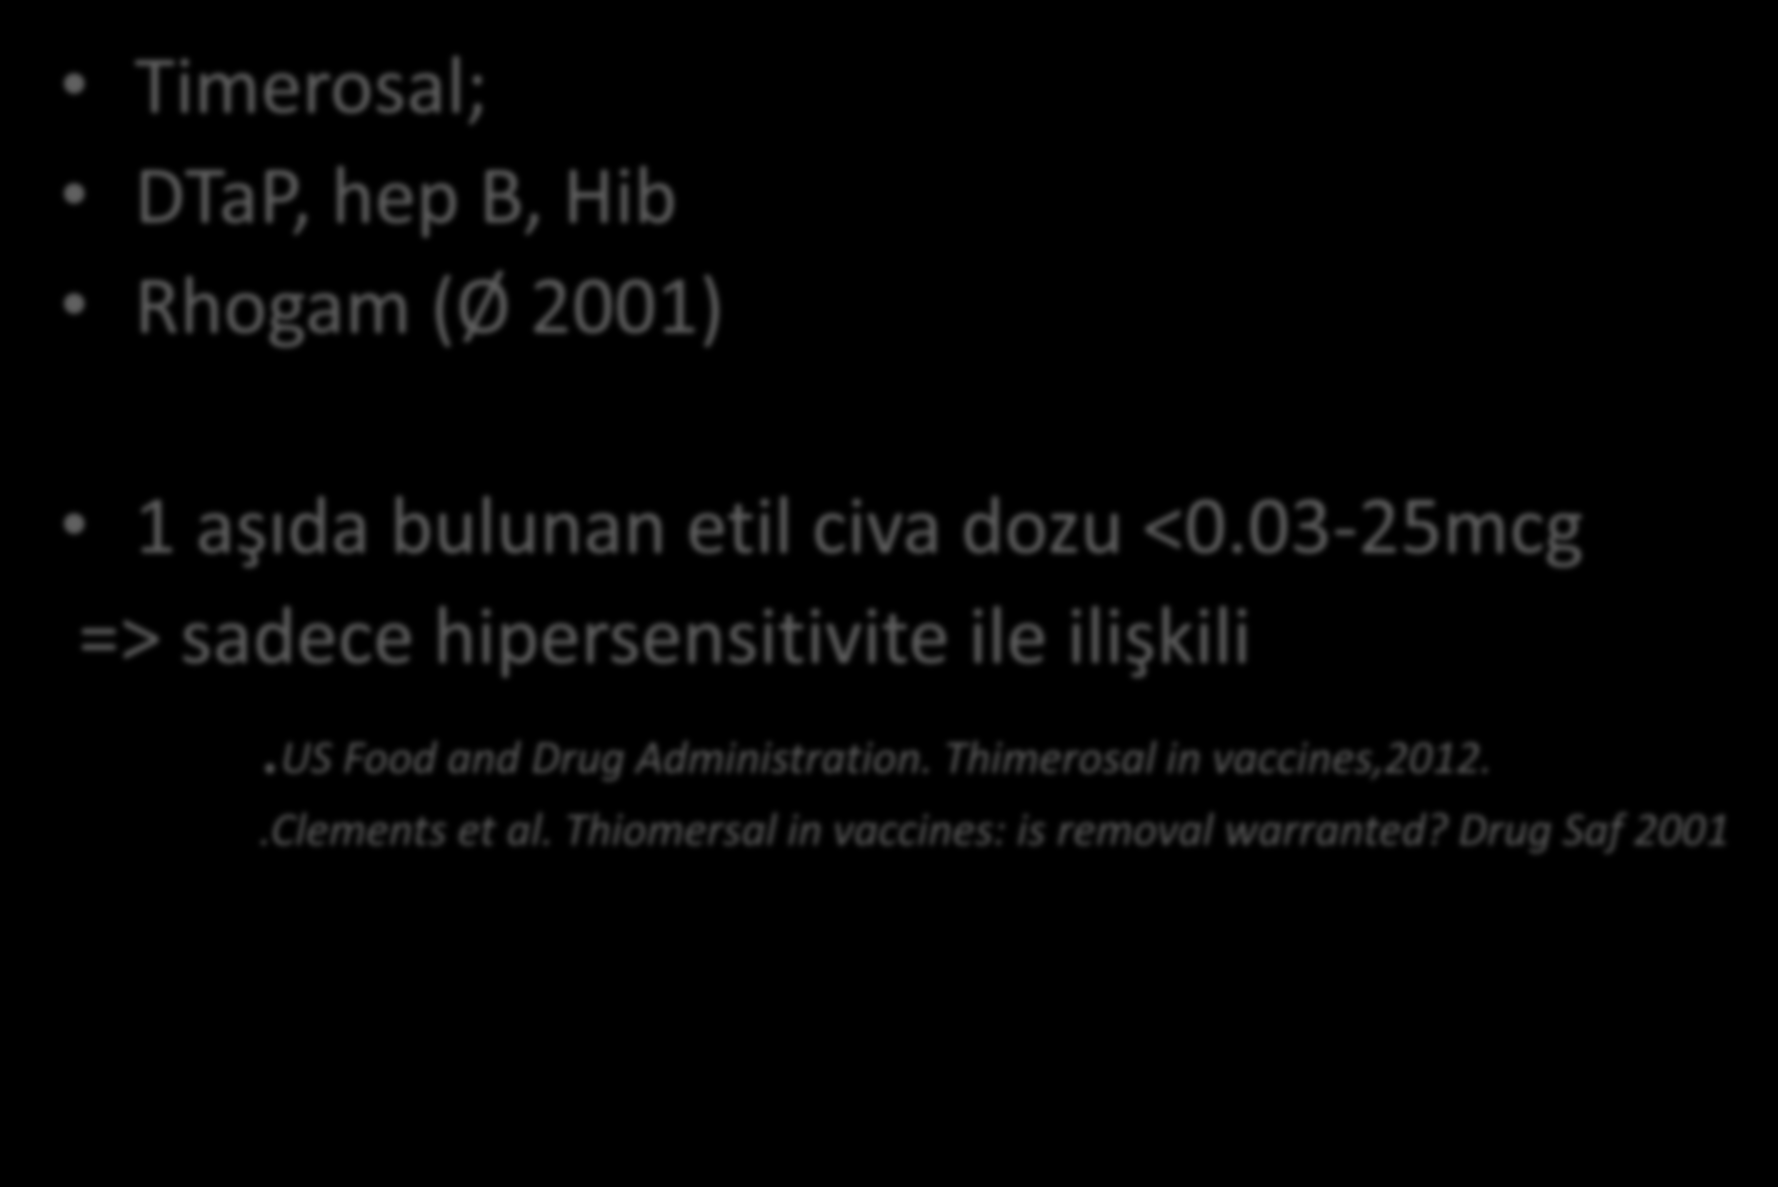 TİMEROSAL GERÇEKTEN SUÇLU MU? Timerosal; DTaP, hep B, Hib Rhogam (Ø 2001) 1 aşıda bulunan etil civa dozu <0.